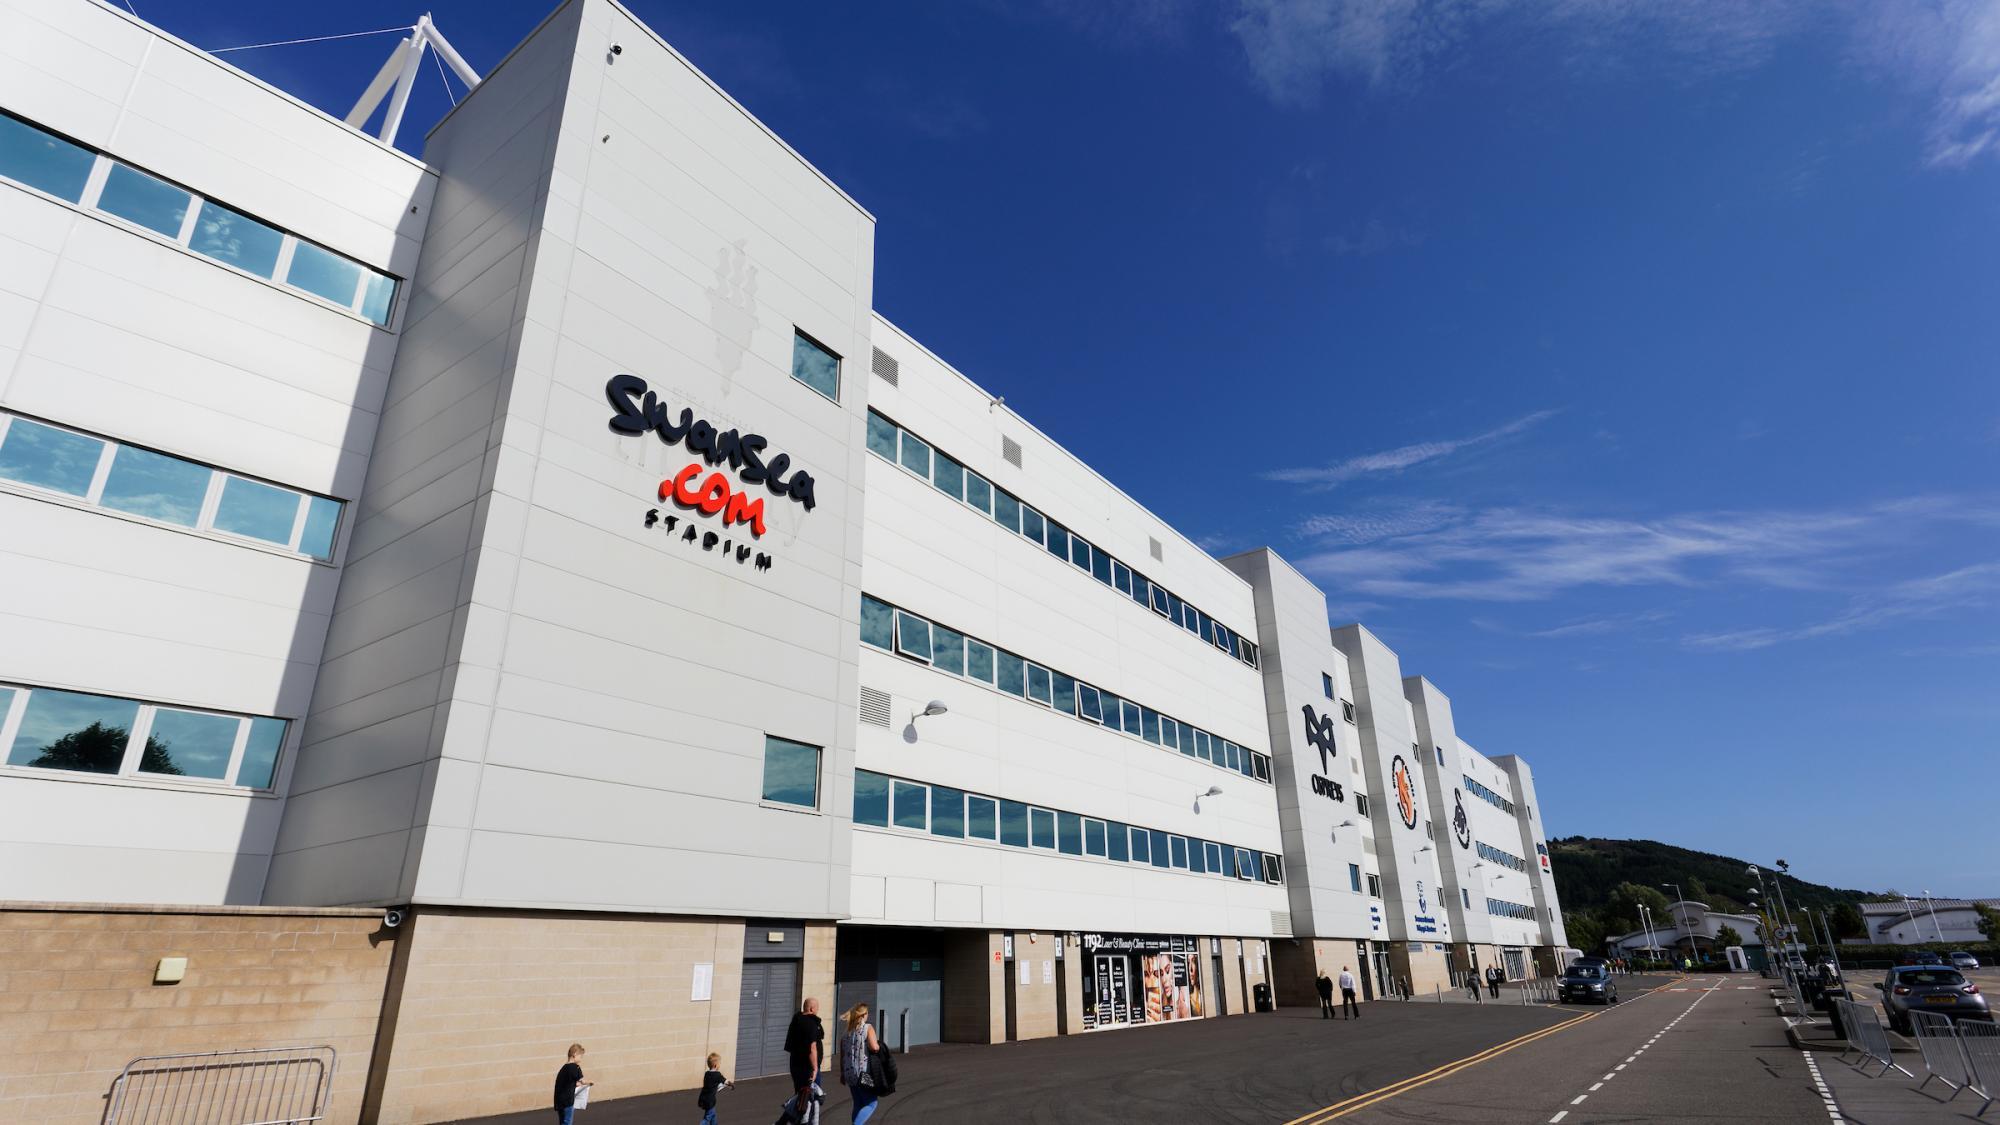 Swansea.com Stadium West Stand